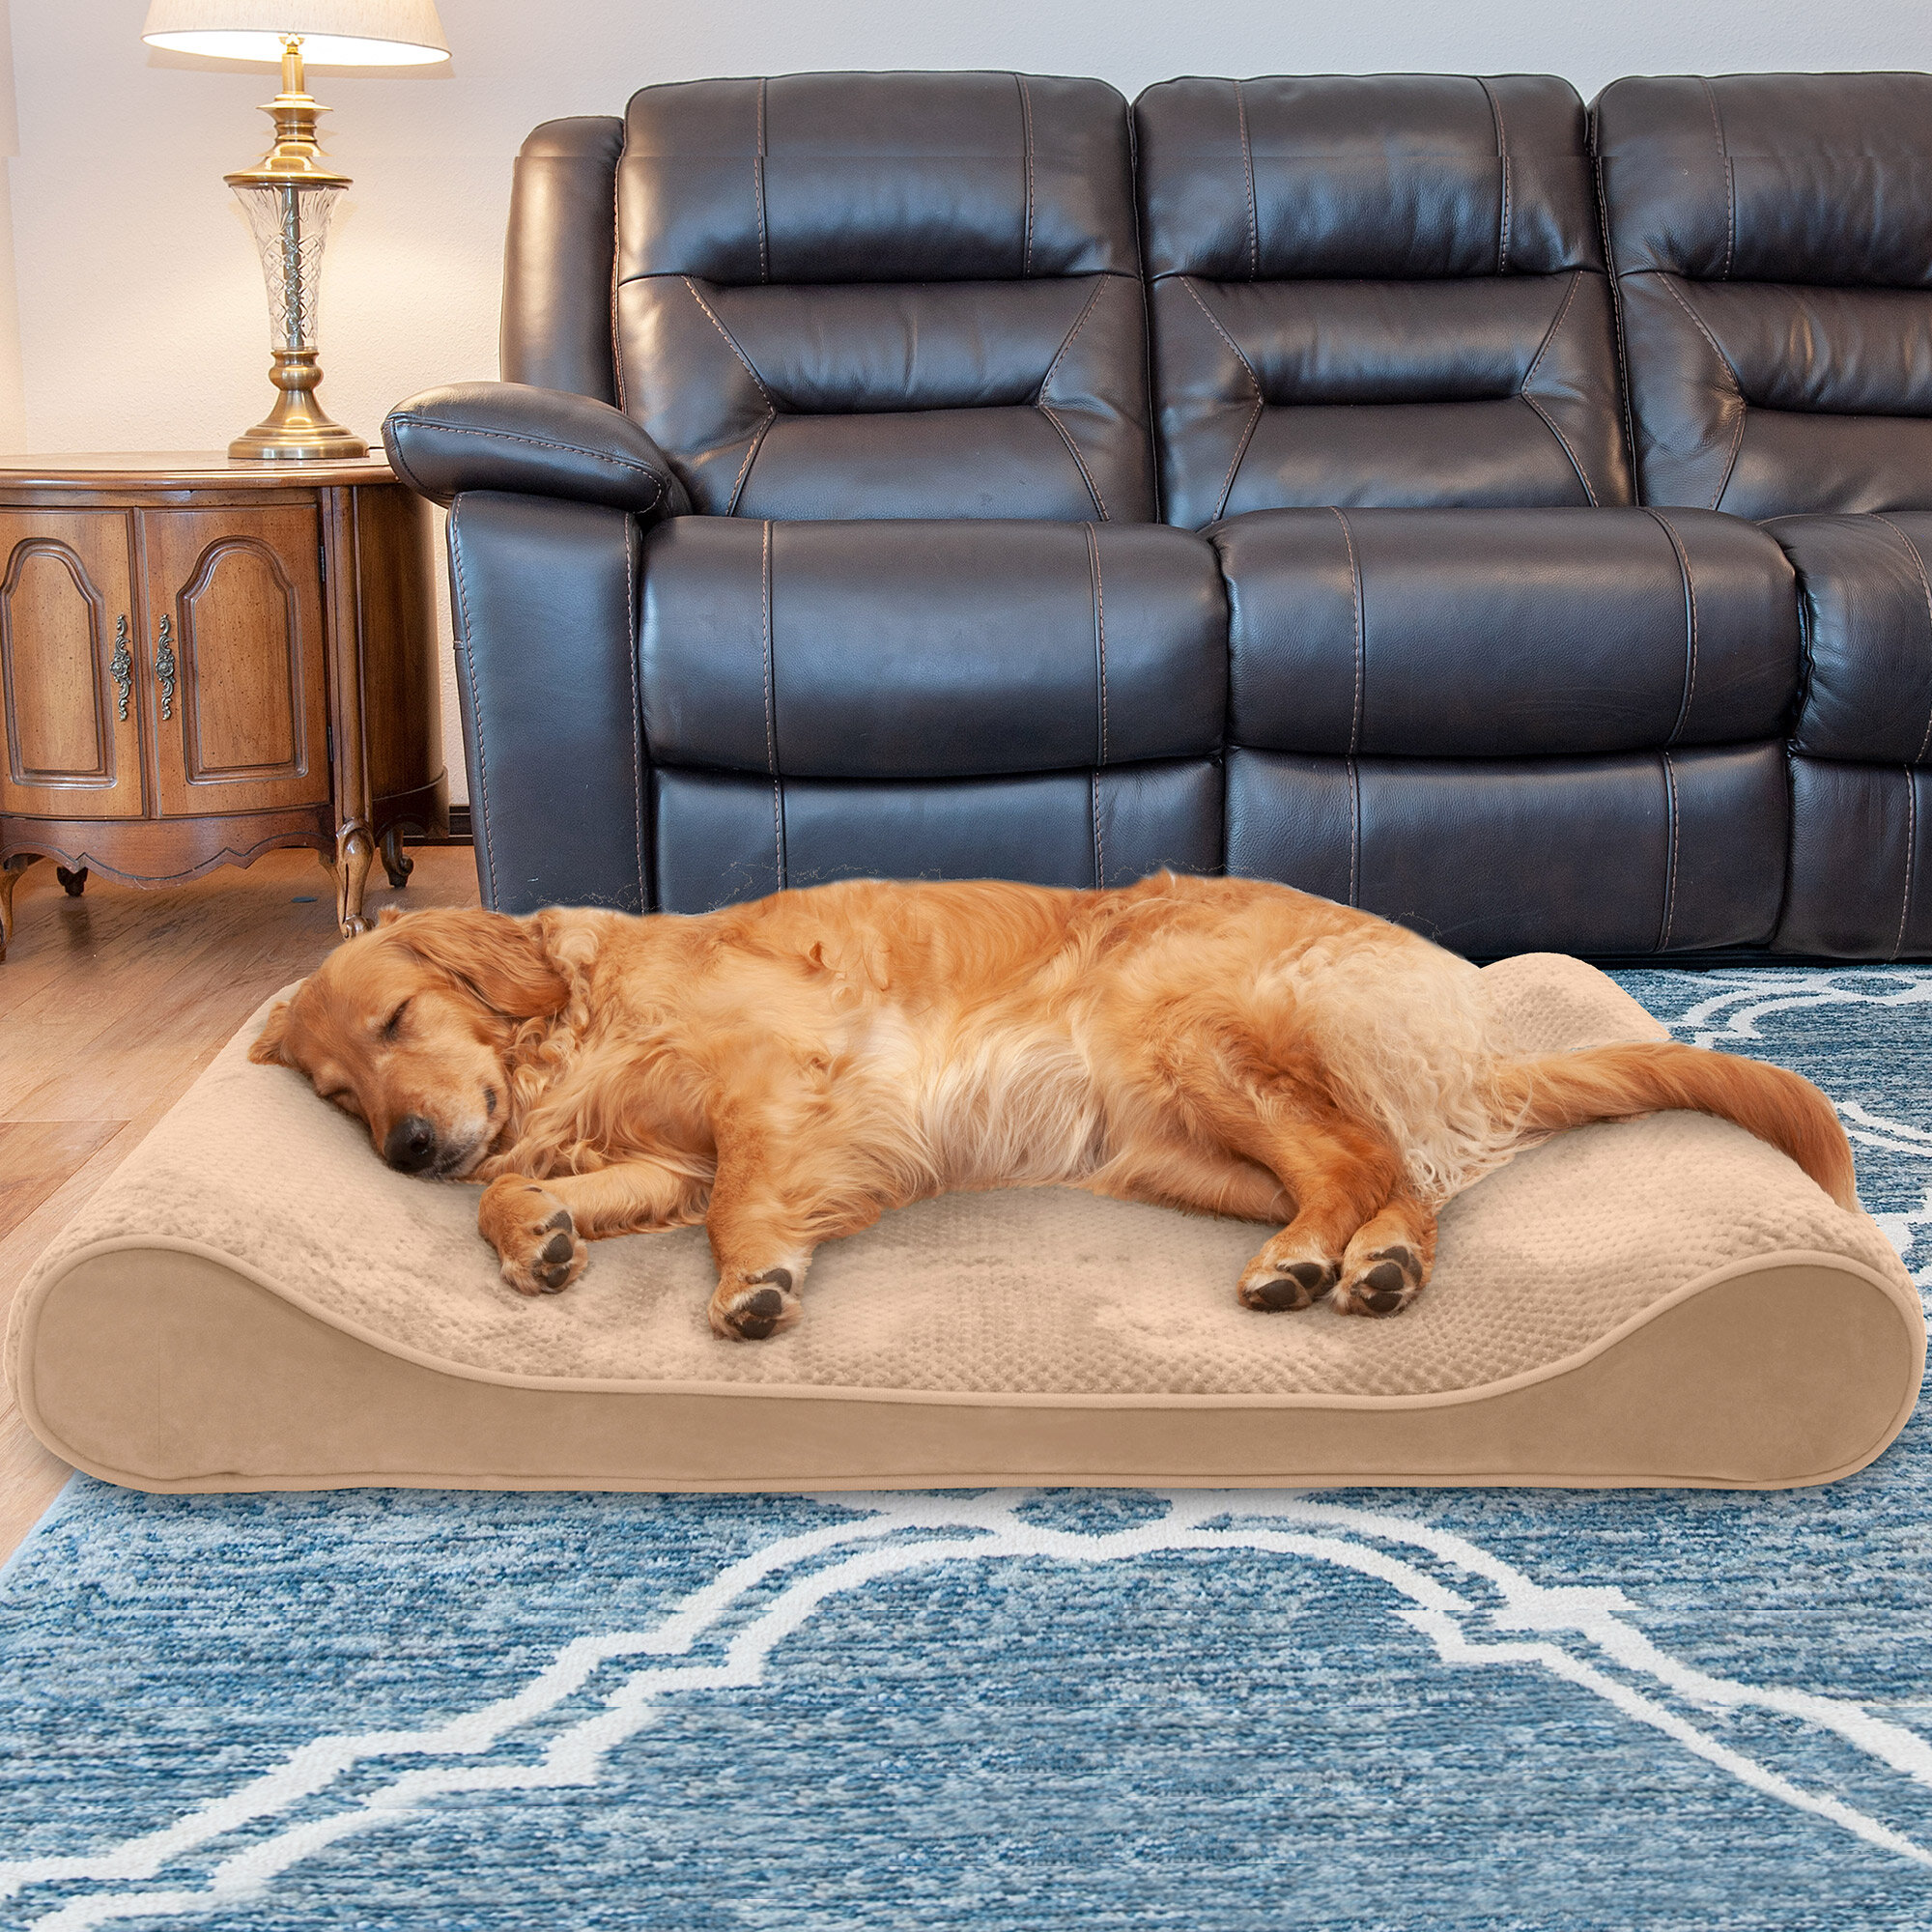 https://assets.wfcdn.com/im/09864314/compr-r85/1403/140378908/minky-plush-velvet-luxe-lounger-contour-dog-pillow.jpg